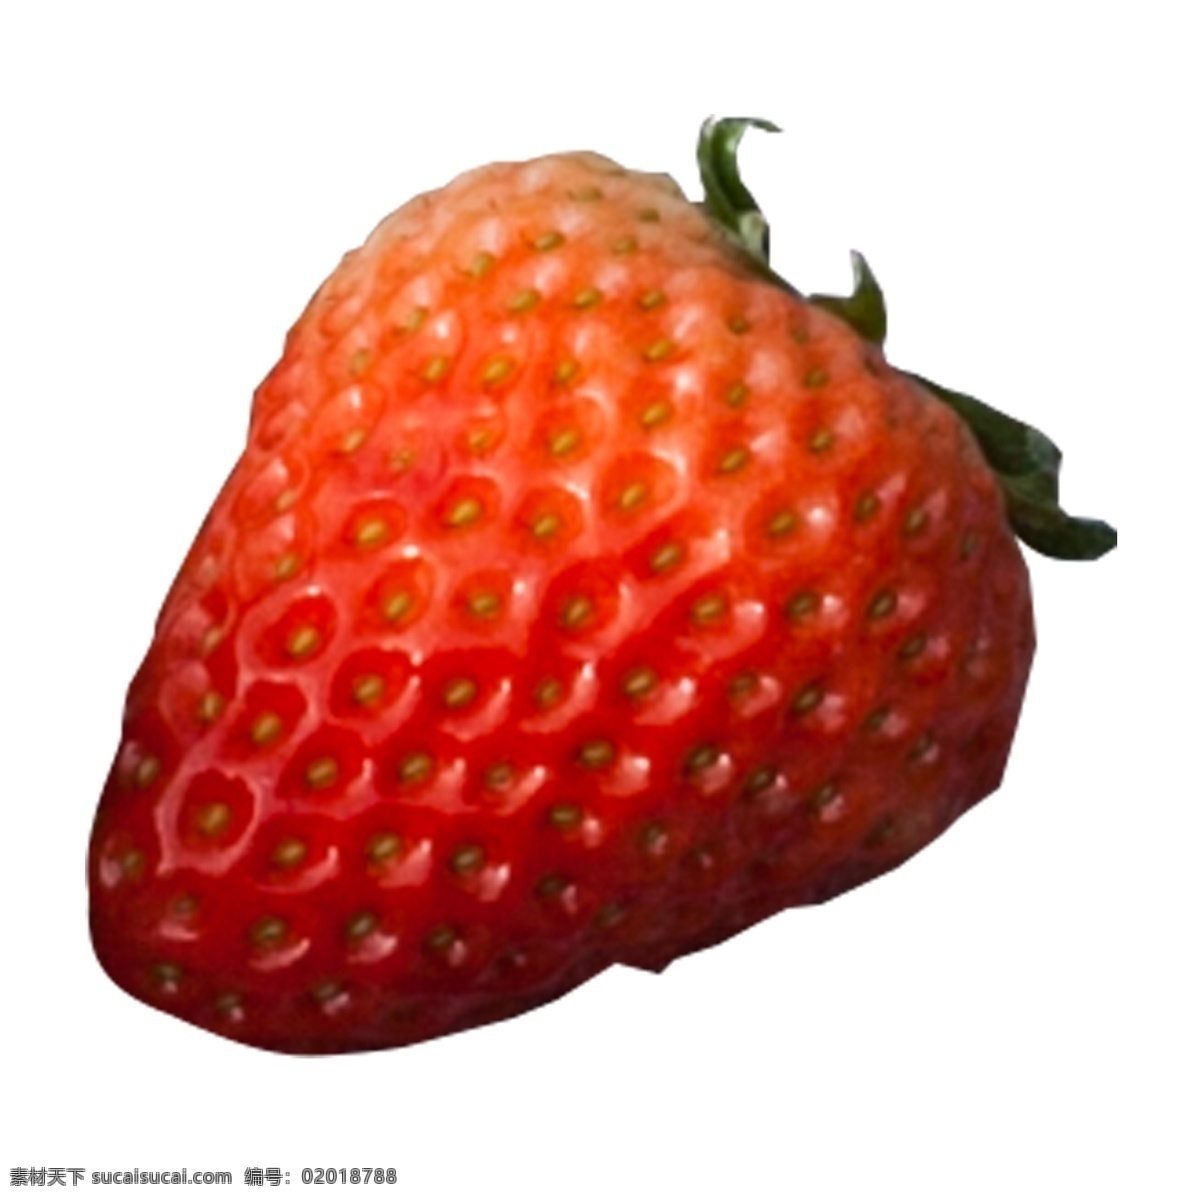 实拍 种植 水果 草莓 红色 红色草莓 营养 营养草莓 菜盆 草莓果盘 水果草莓 实拍水果草莓 实拍野炊聚会